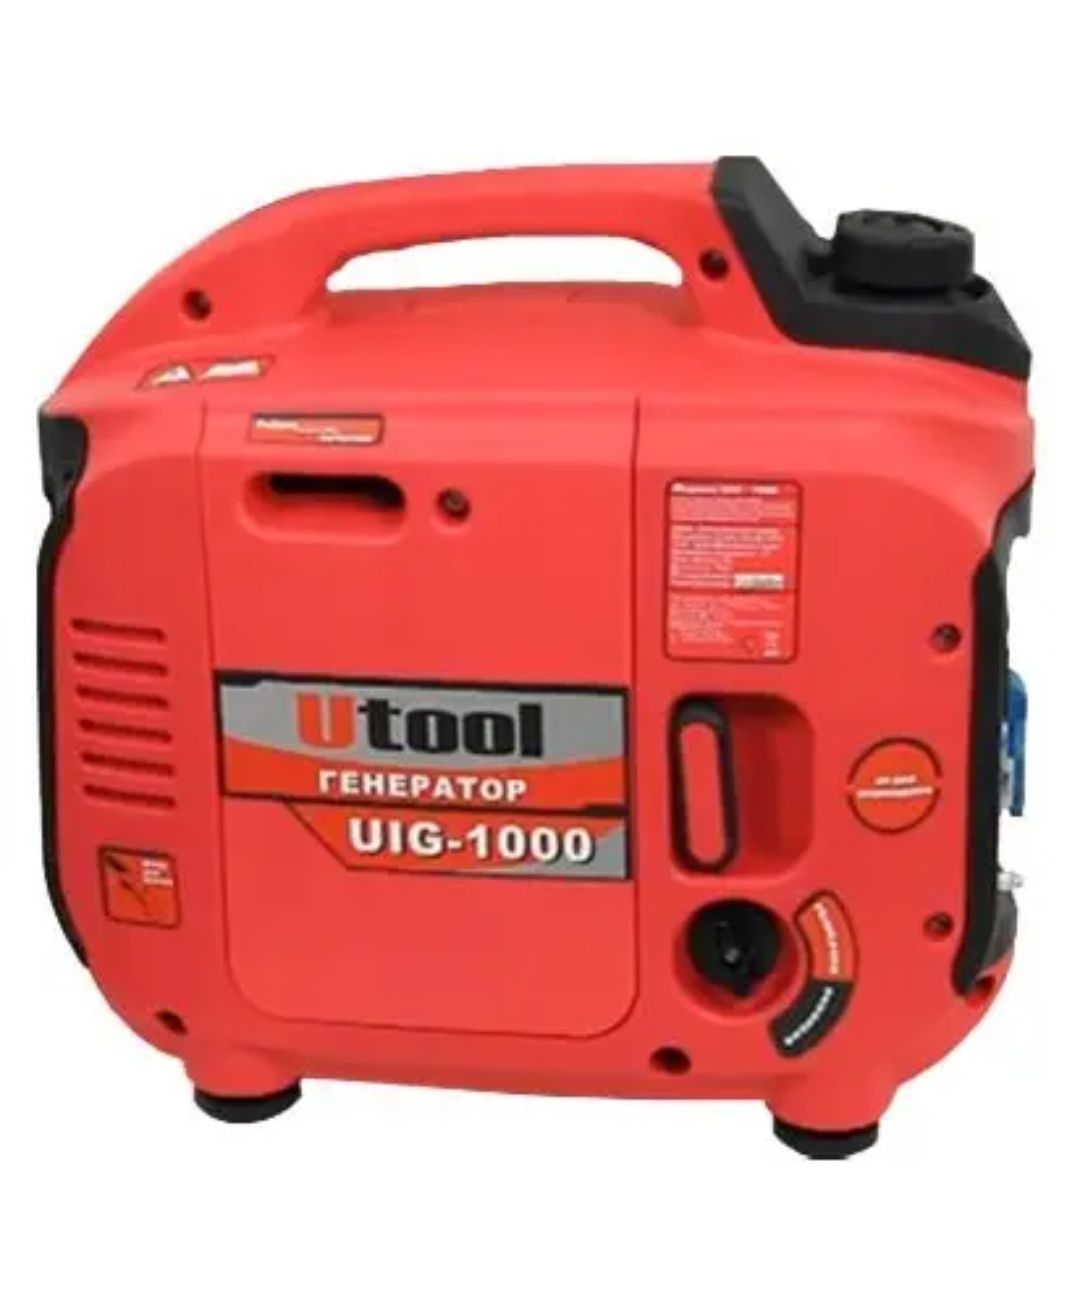 Продам инверторный генератор UIG-1000